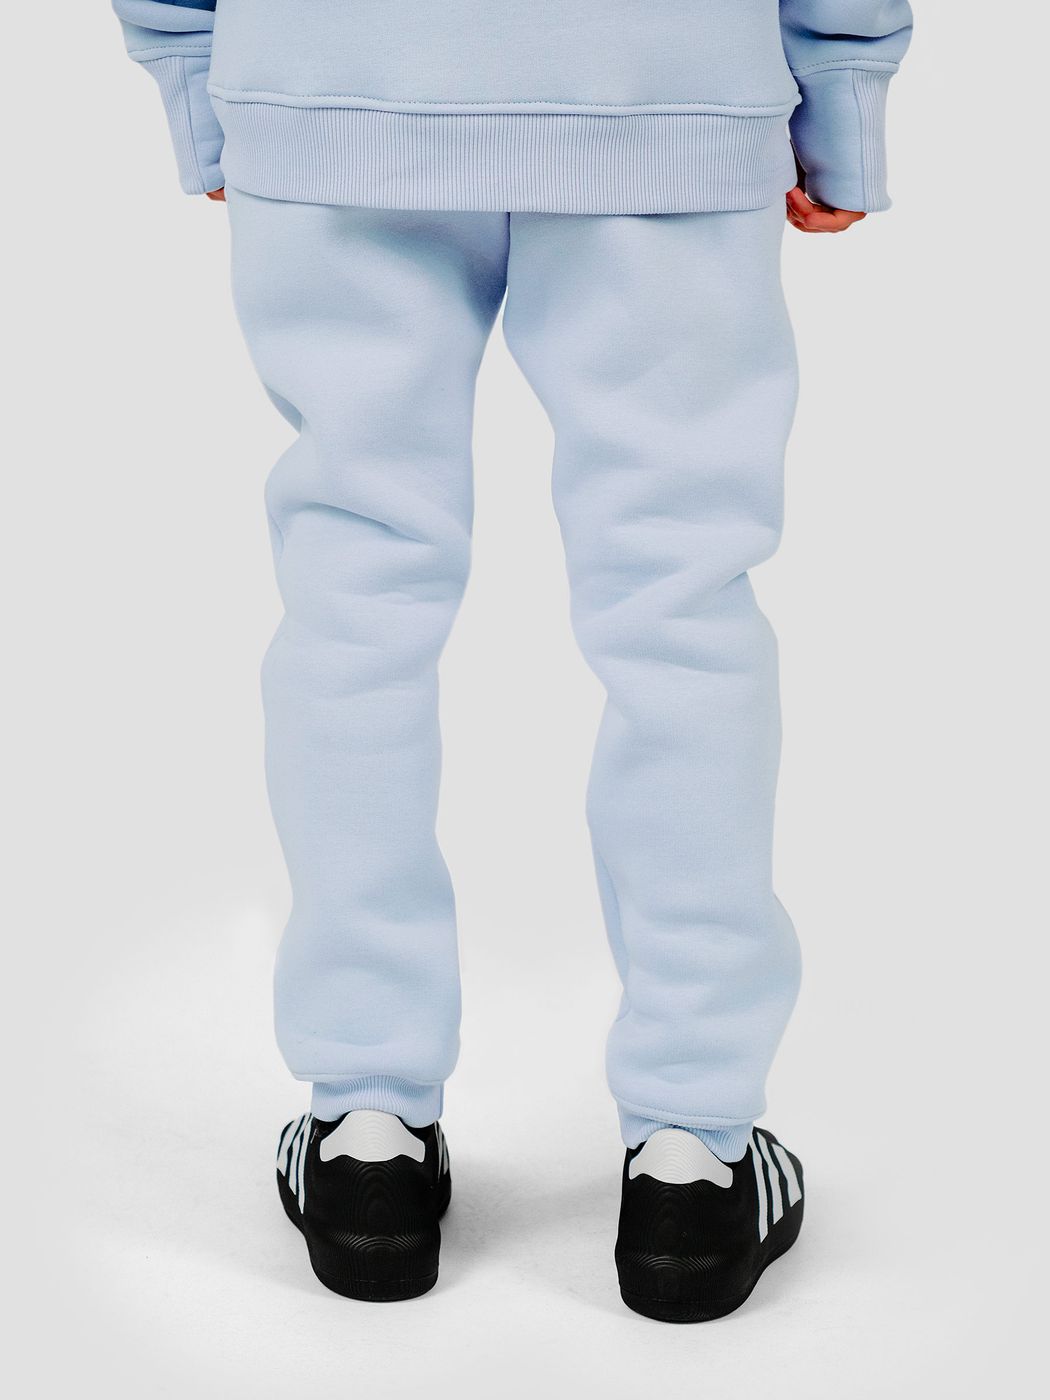 Костюм детский худи и штаны светло-голубой, світло-блакитний, 3XS (86-92 см), 92